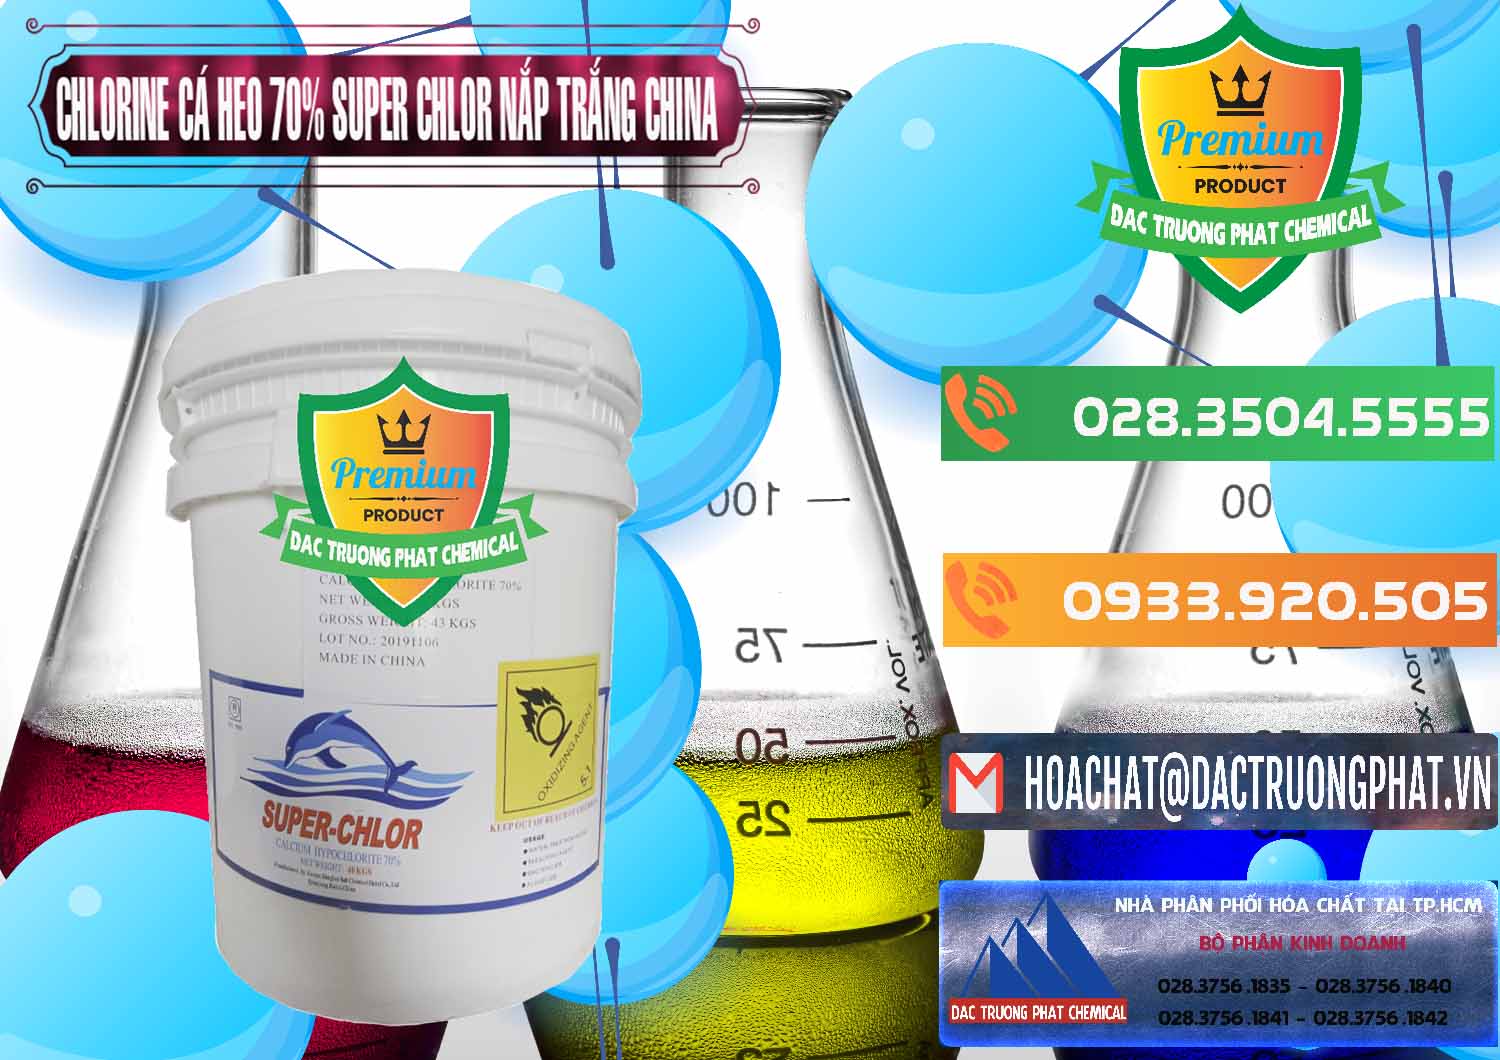 Chuyên cung ứng _ bán Clorin - Chlorine Cá Heo 70% Super Chlor Nắp Trắng Trung Quốc China - 0240 - Công ty phân phối và cung cấp hóa chất tại TP.HCM - hoachatxulynuoc.com.vn